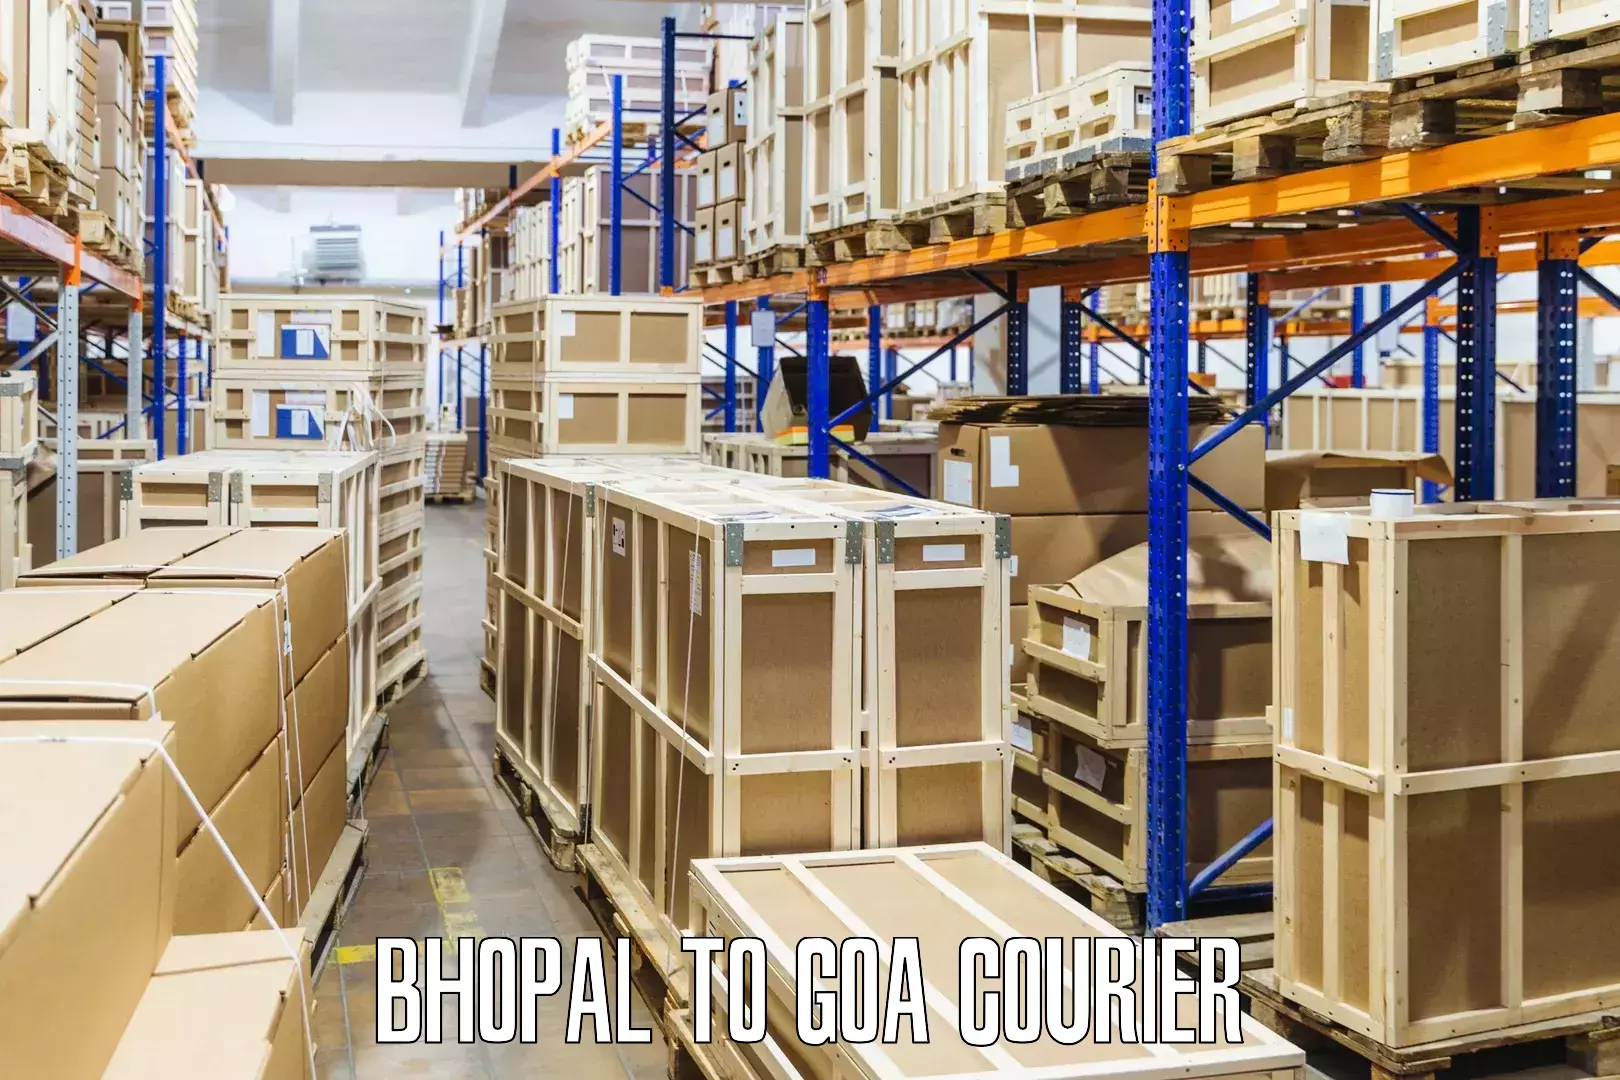 Advanced parcel tracking Bhopal to Mormugao Port